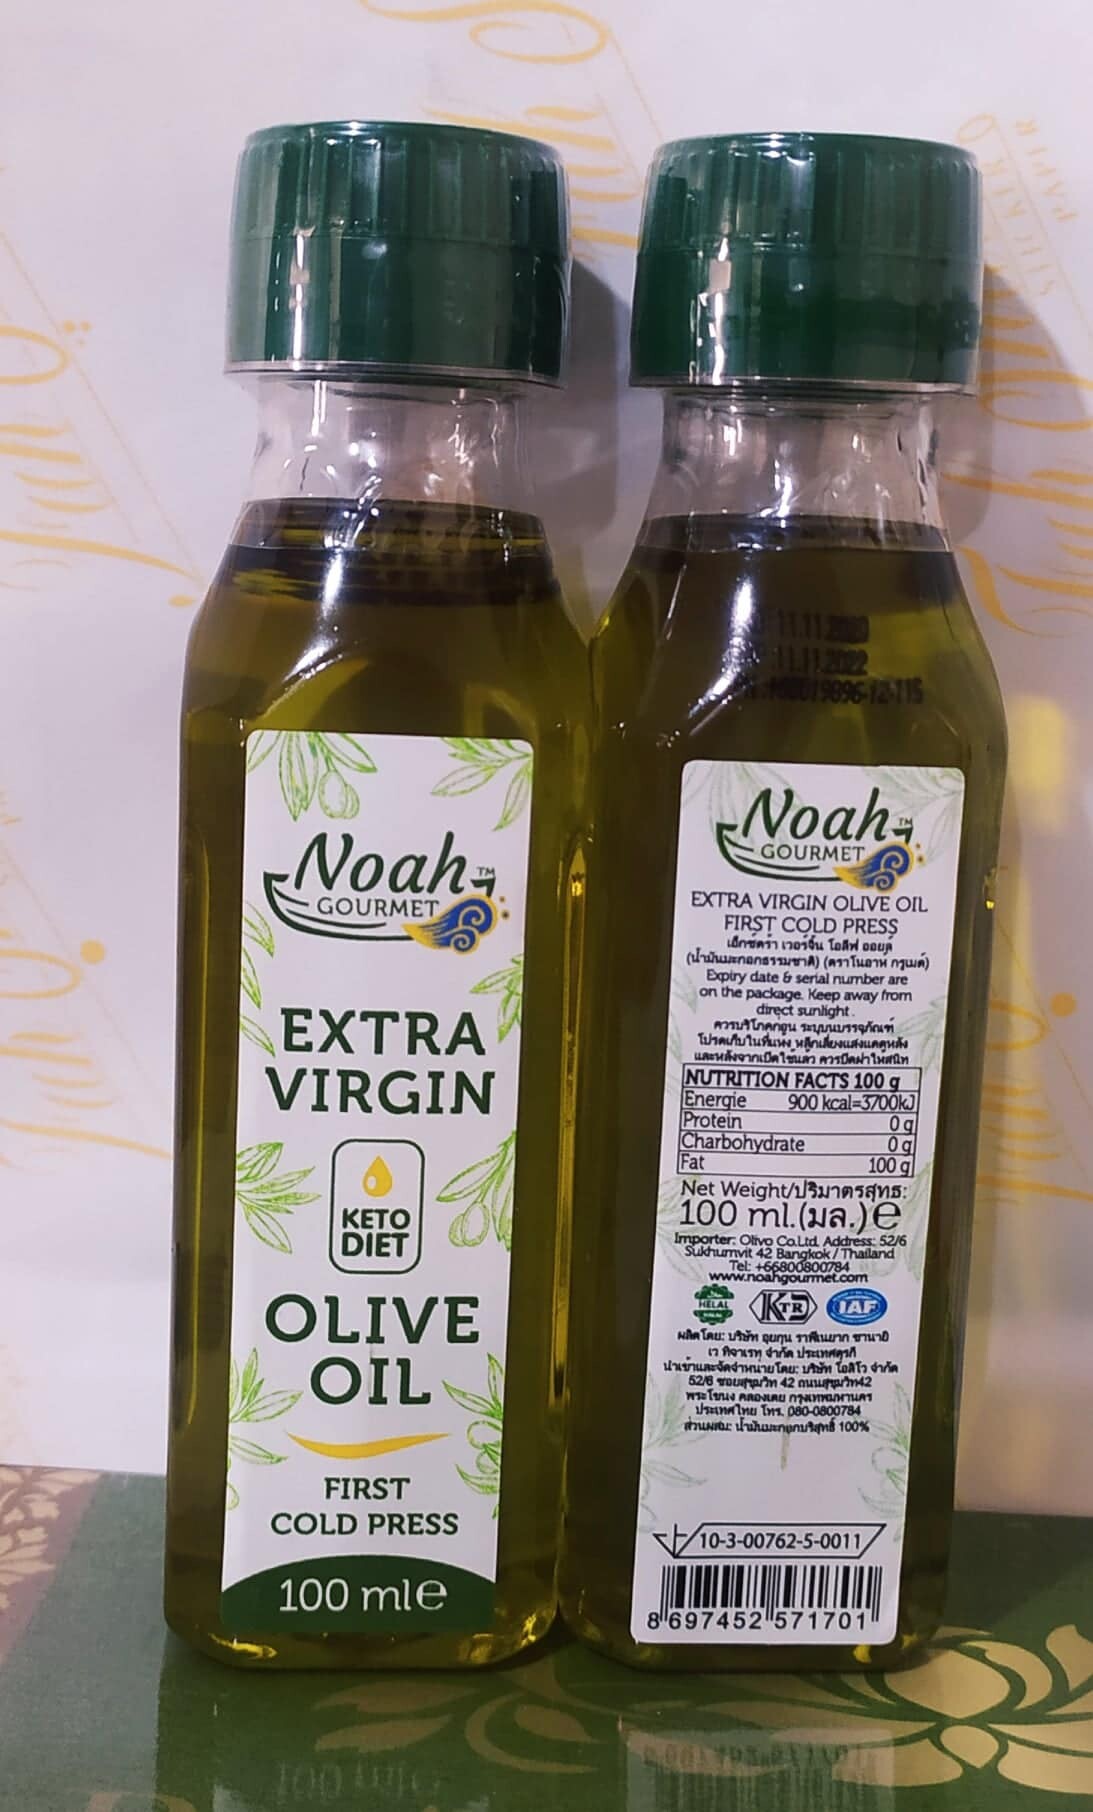 น้ำมันมะกอกบริสุทธ์ Extra virgin olive oil first cold press 100 ml. ตรา Noah gourmet